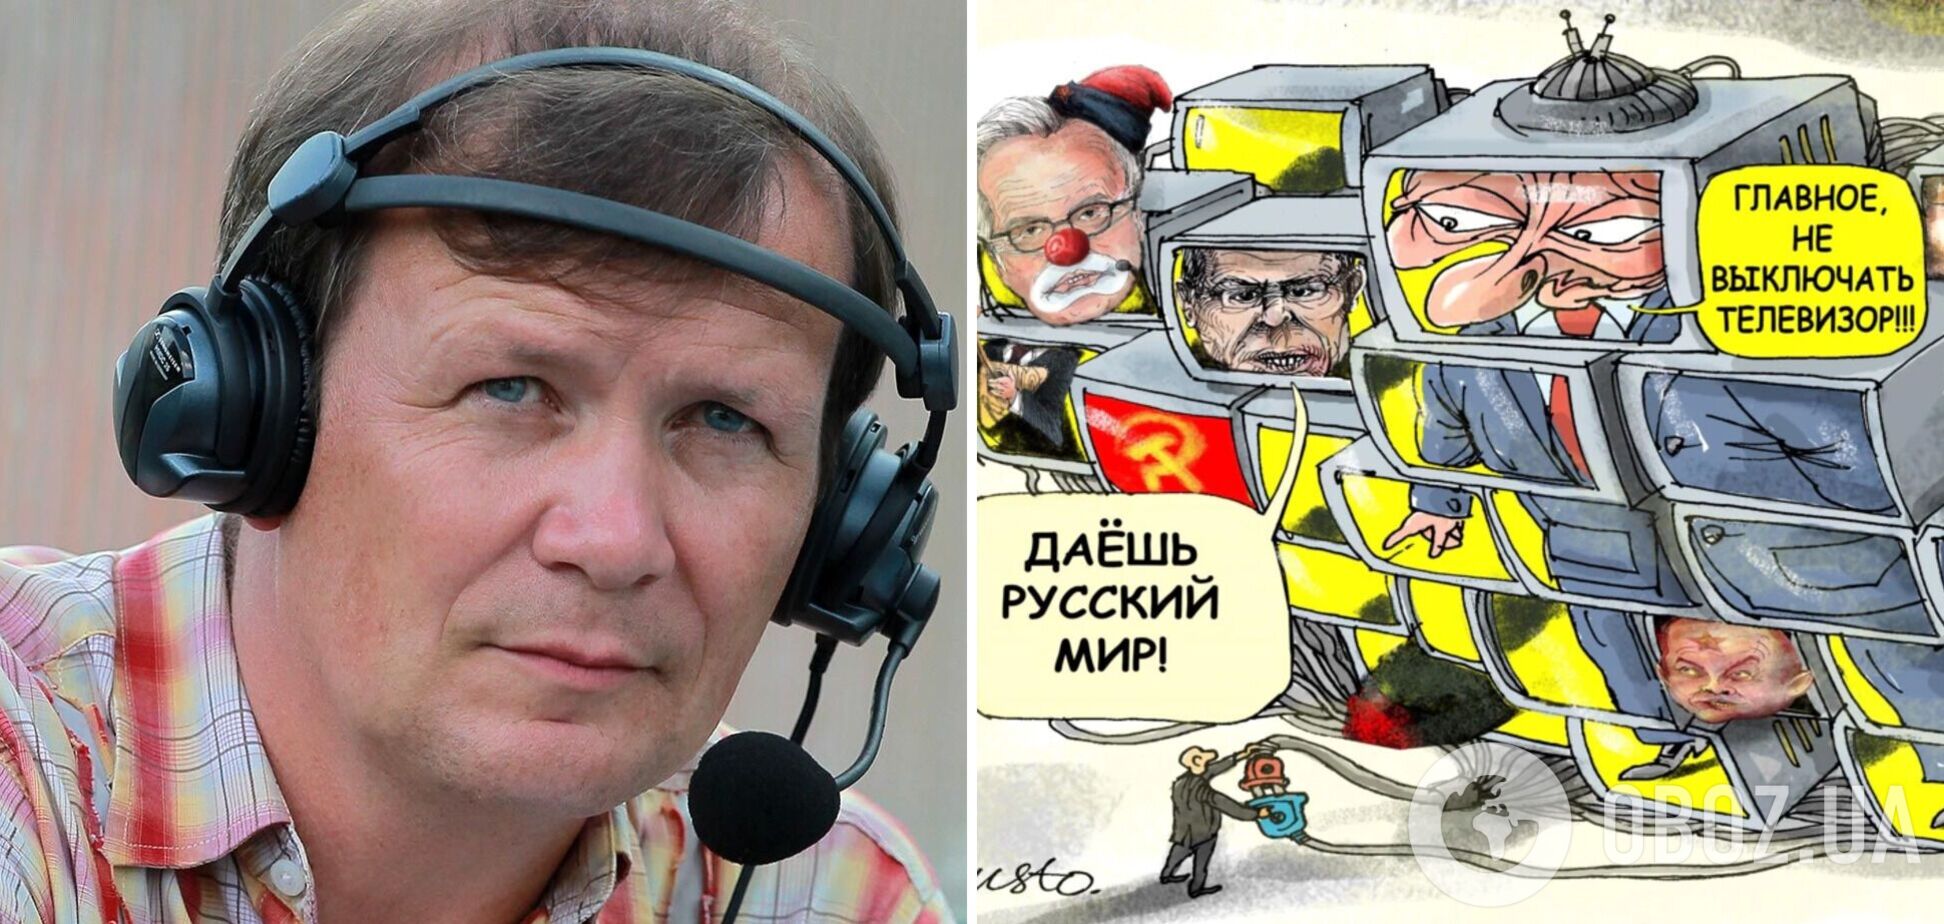 'Заточена на войну': комментатор из РФ разоблачил истинное лицо россиян